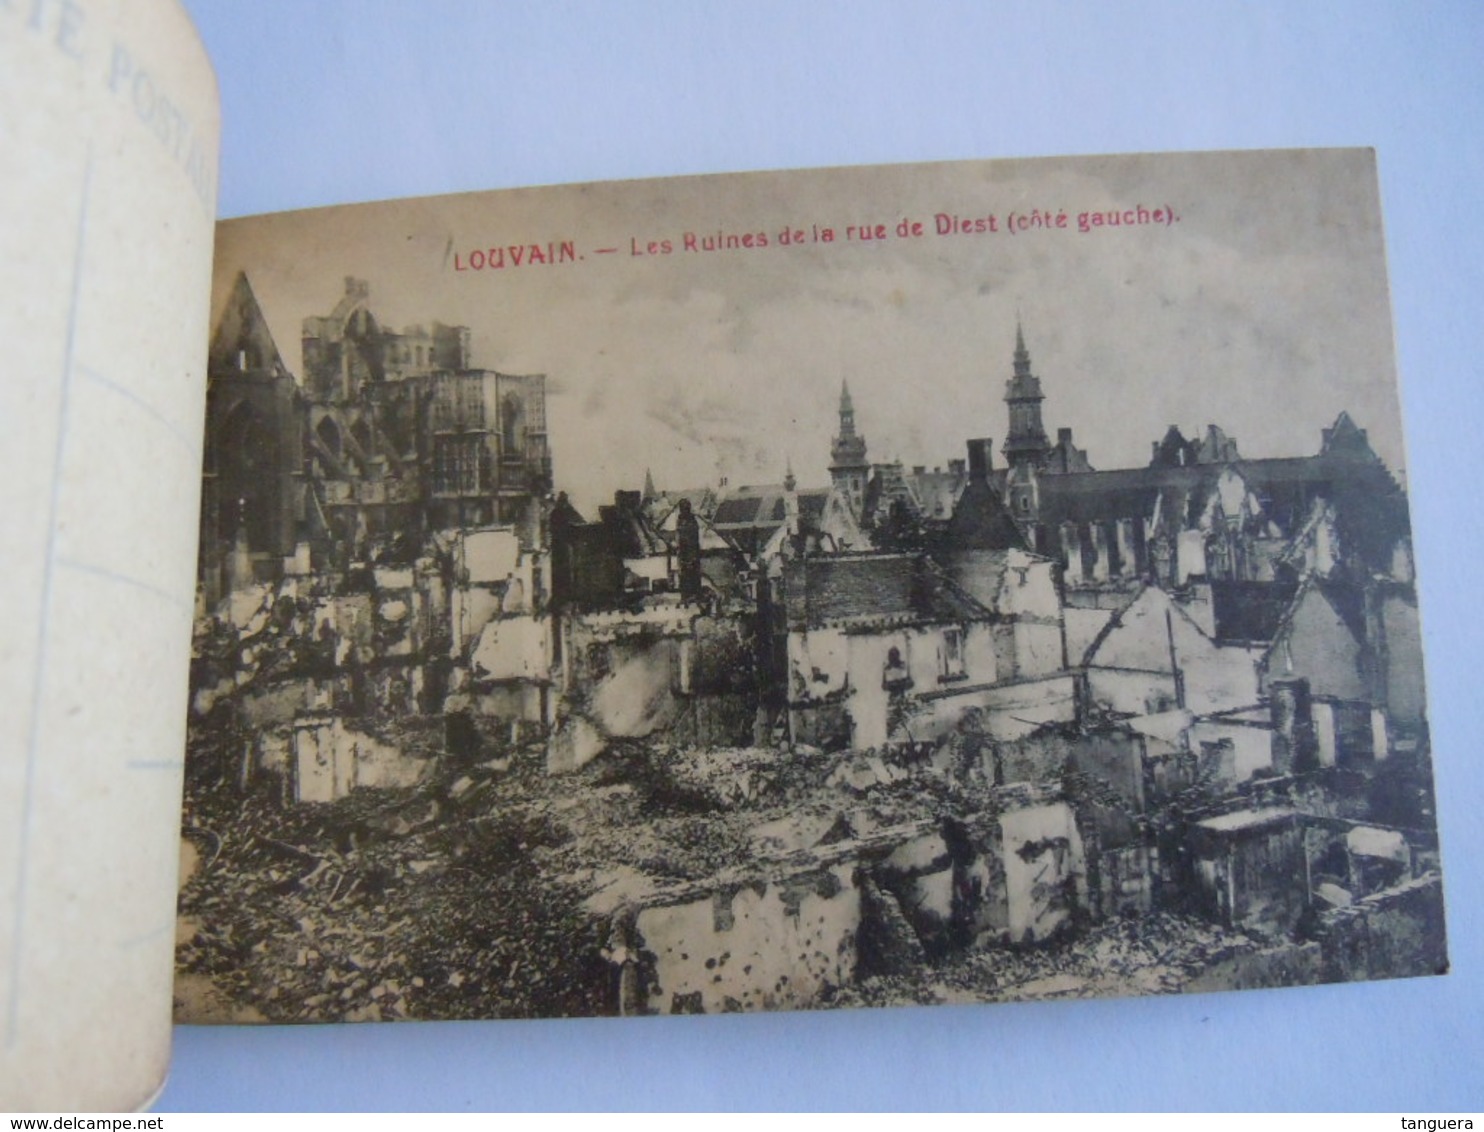 Les ruines de Louvain Leuven cartes vues 1914 Edit PhoB 2 kaarten zijn los en verstuurd,  7 kaarten vast in het boekje